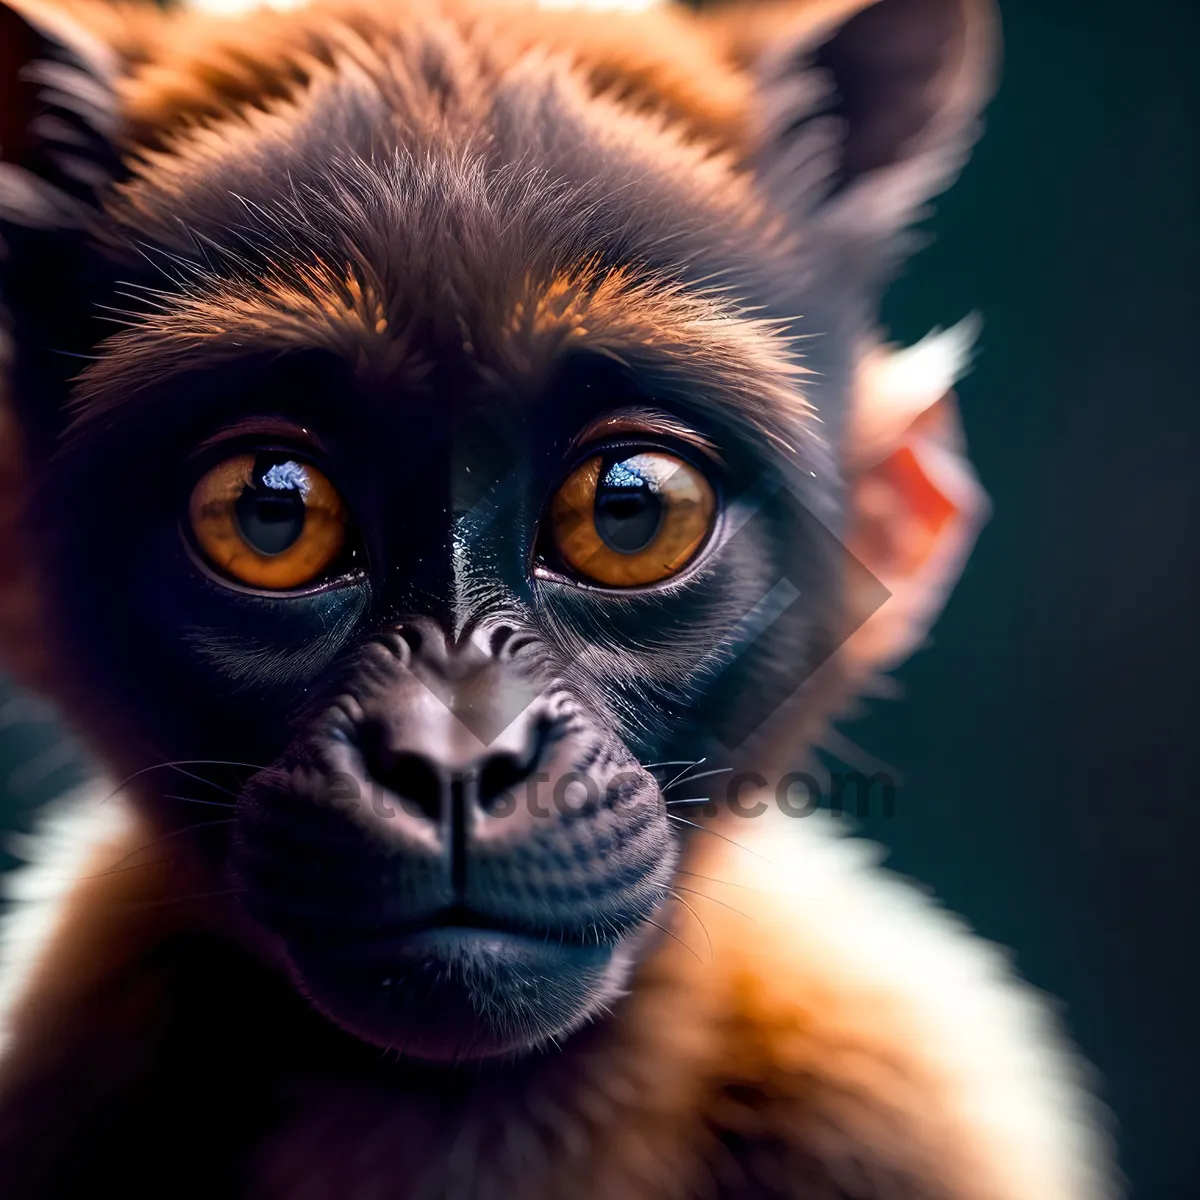 Picture of Cute Orangutan Monkey Portrait in Natural Jungle